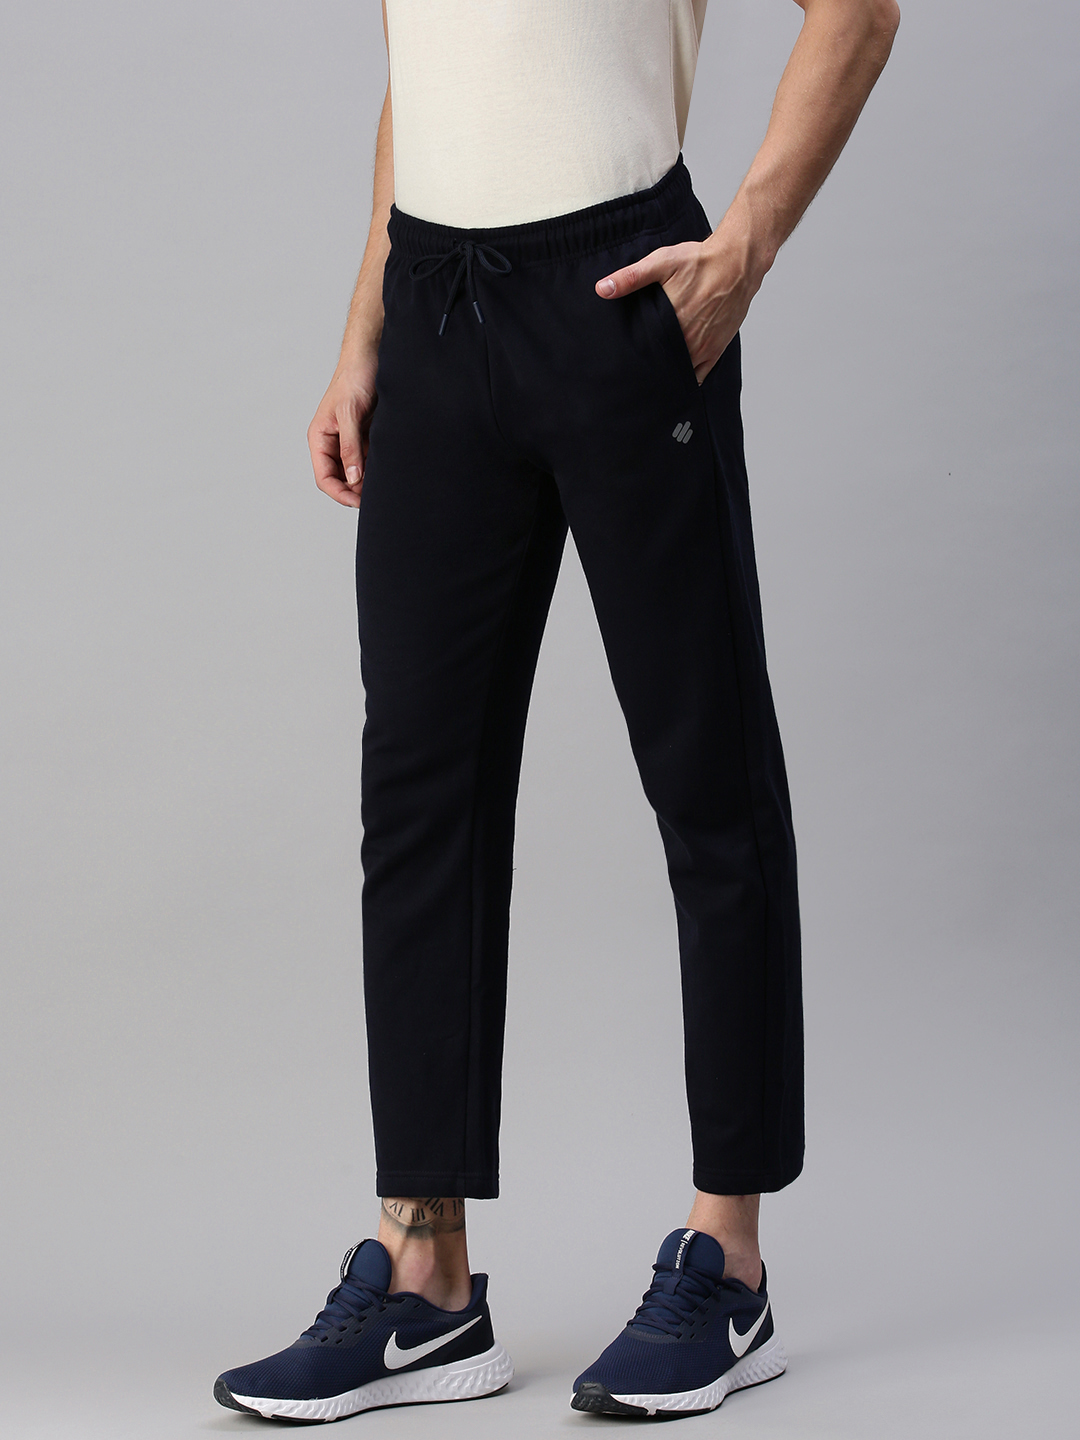 Balenciaga piping jogger pants women - Glamood Outlet